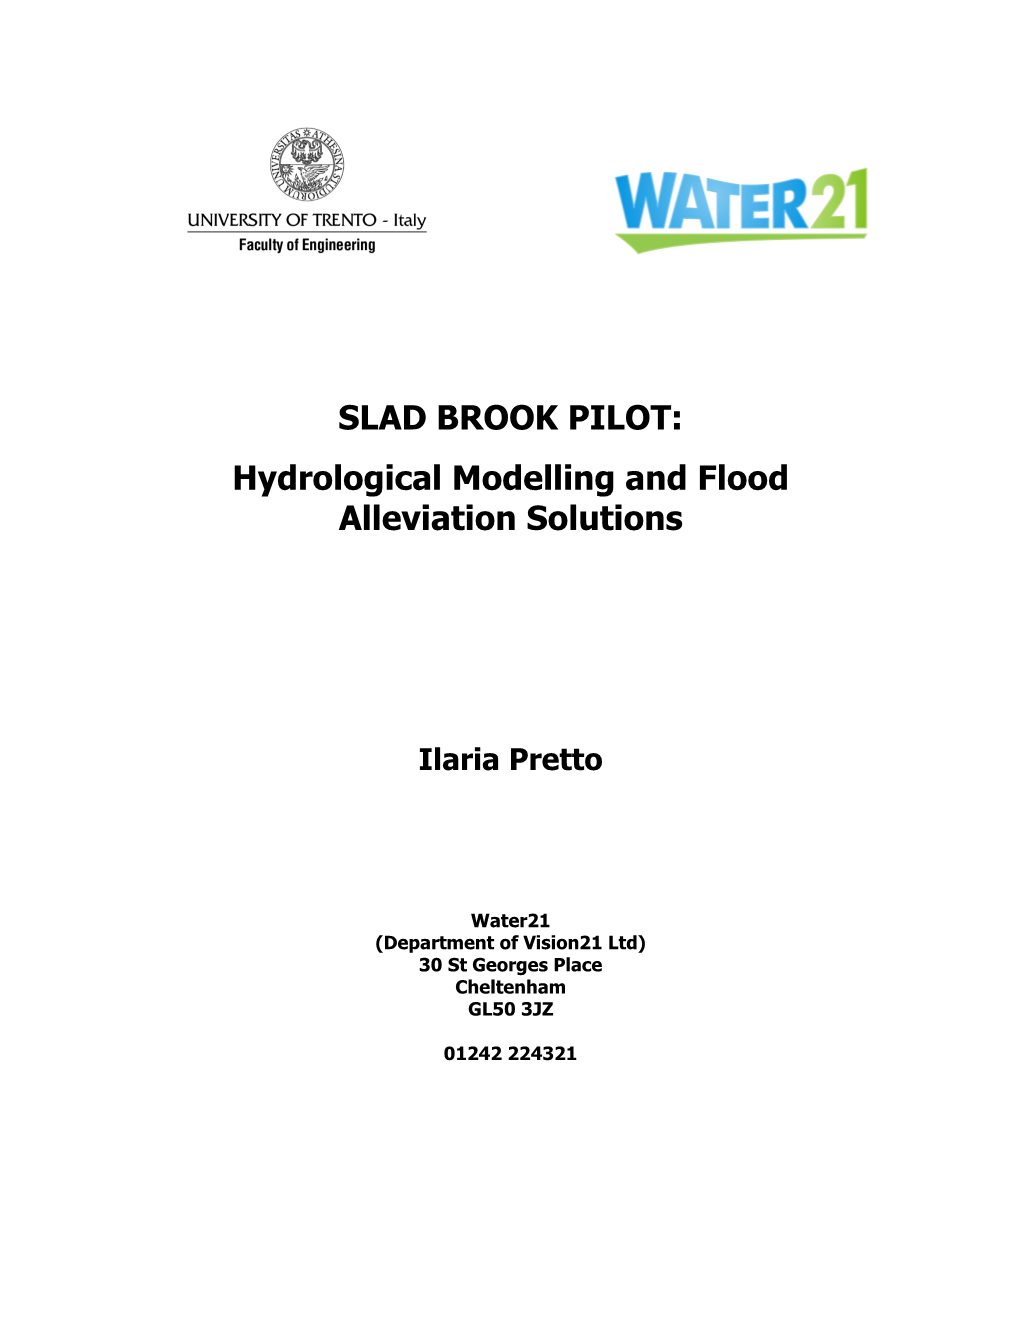 SLAD BROOK PILOT: Hydrological Modelling and Flood Alleviation Solutions